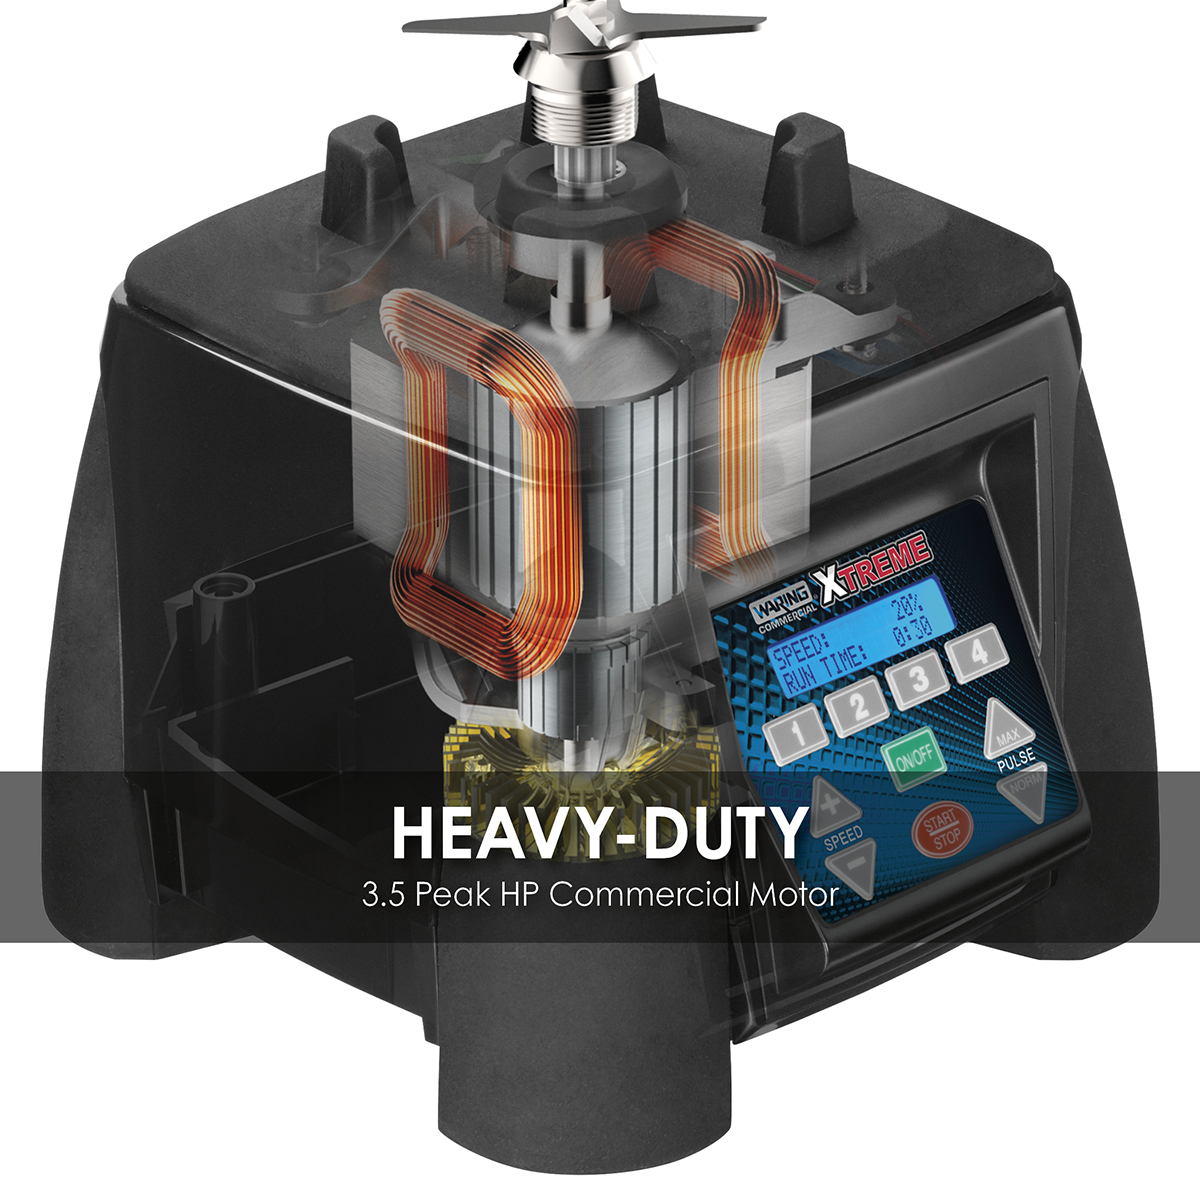 BUCHYMIX Ultra-Heavy-Duty SOUNDPROOF Super Blender with 2.5 Liter